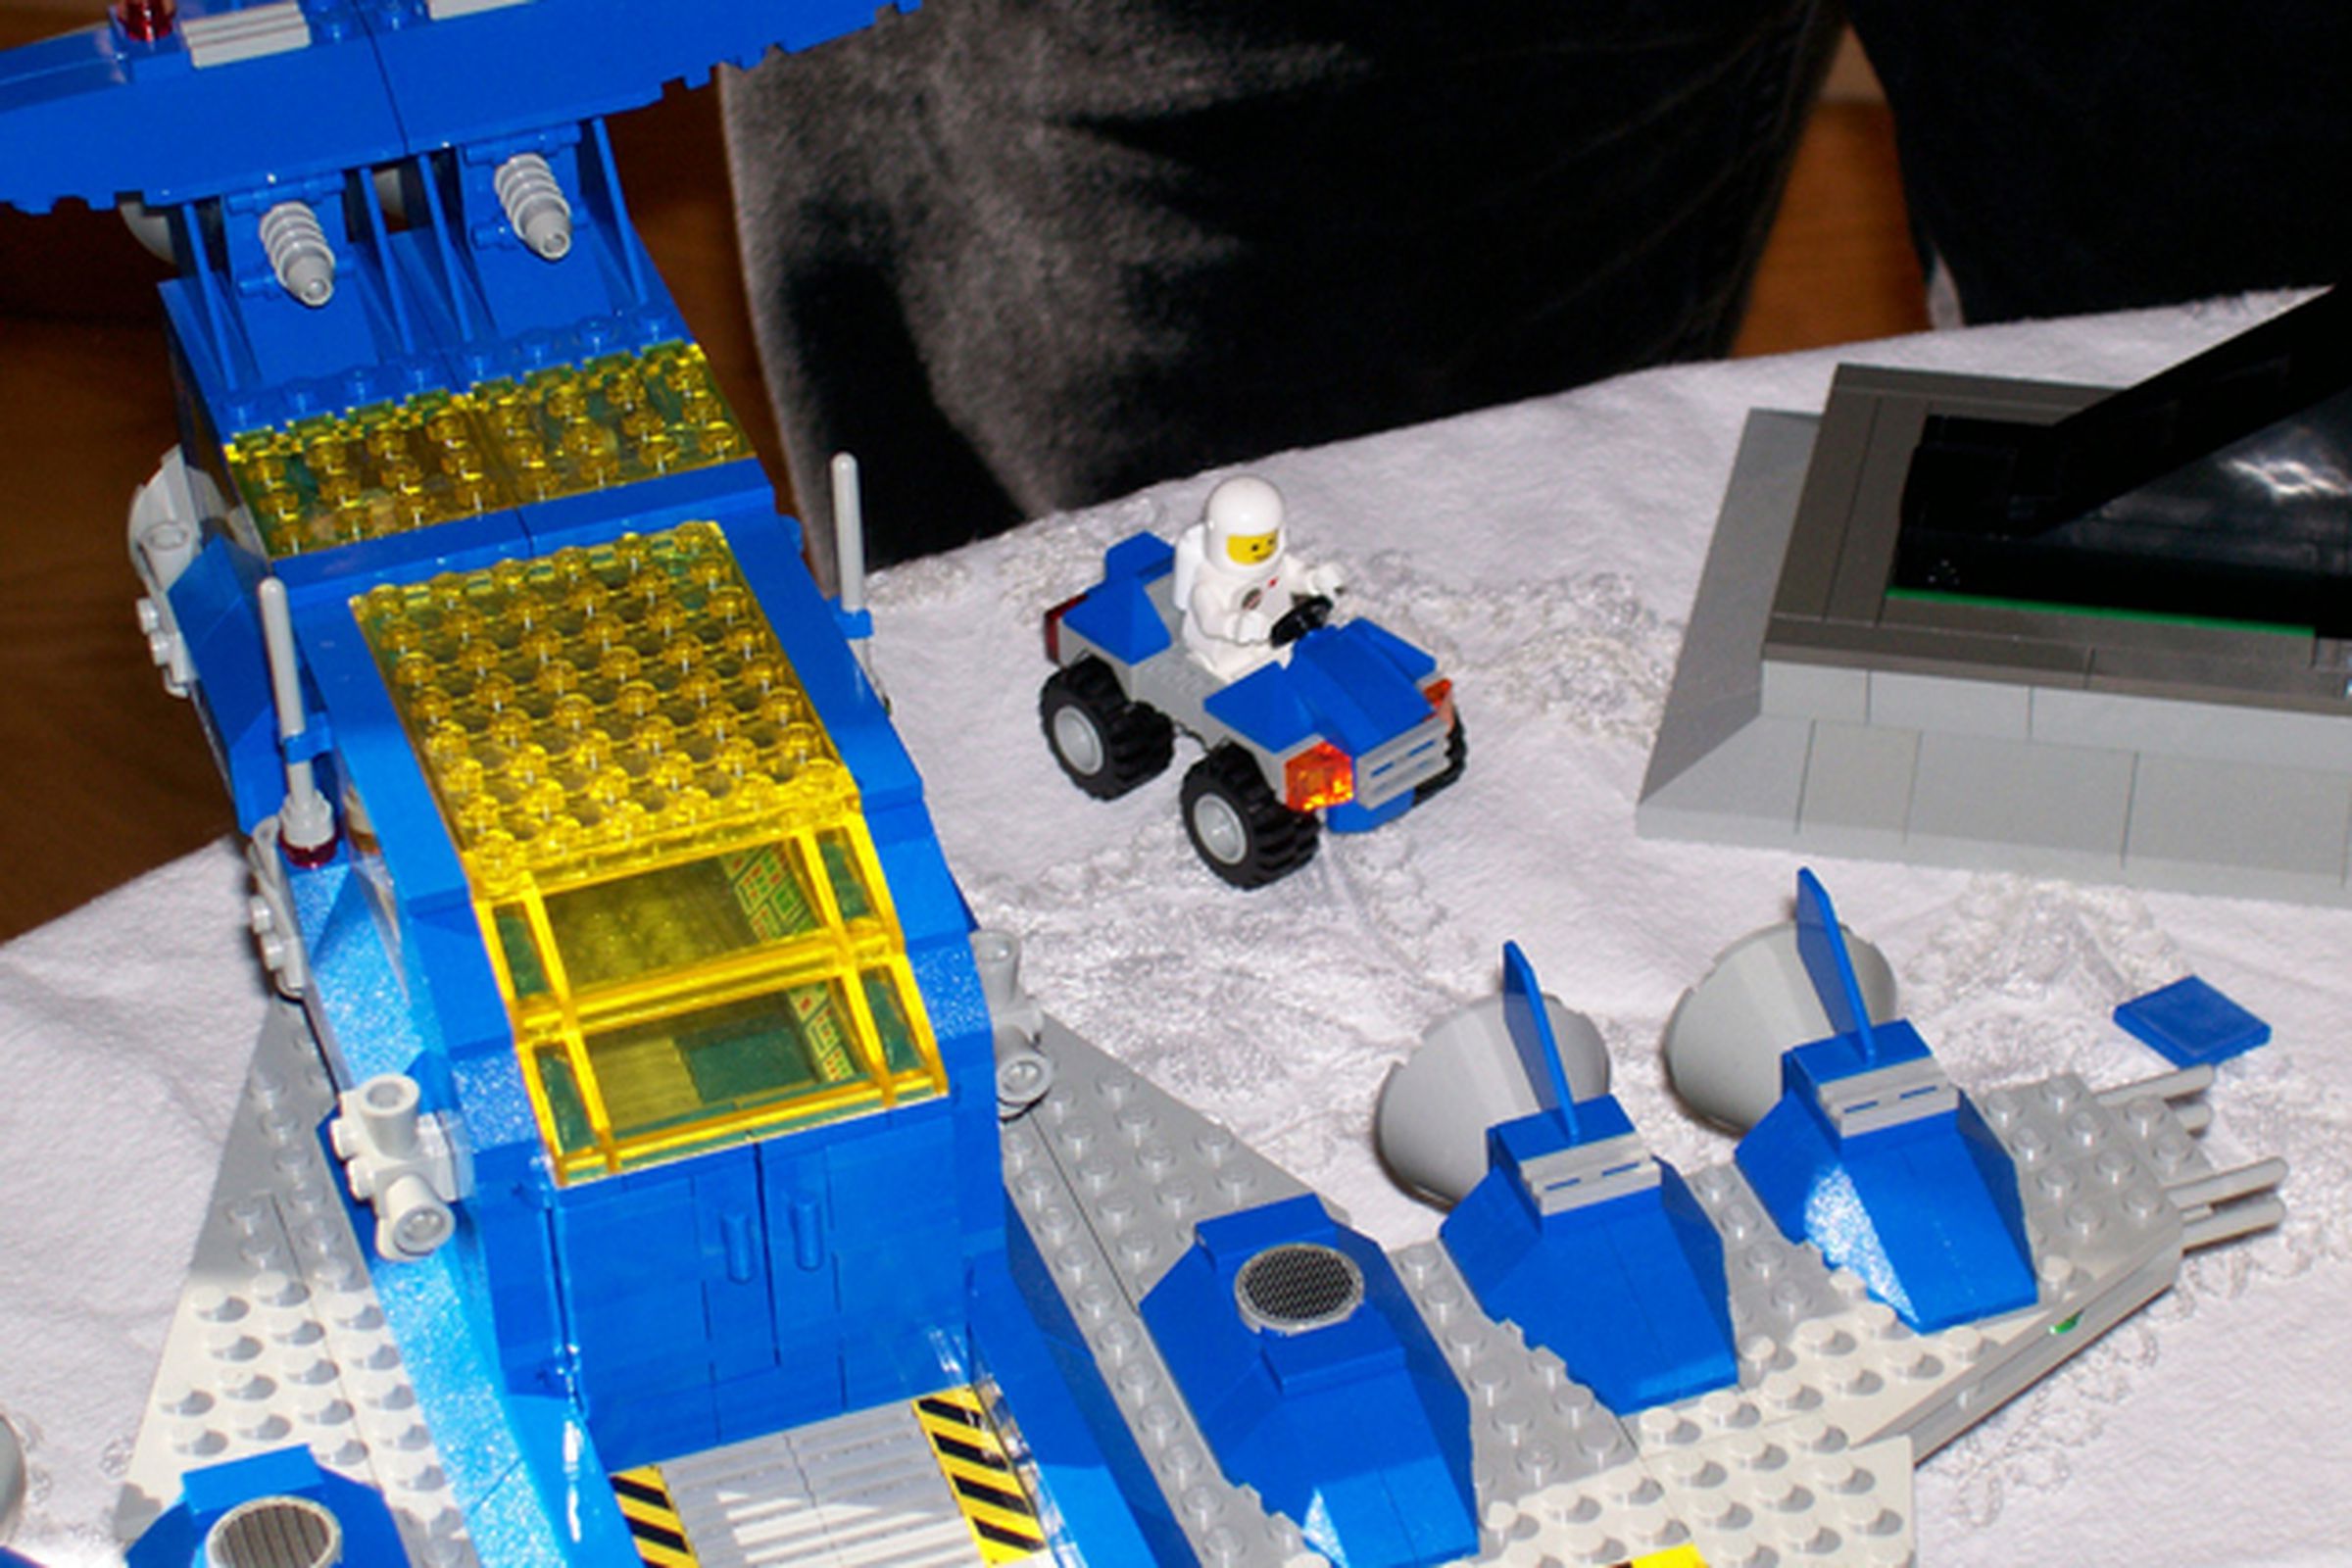 Lego Galaxy Explorer (FLICKR)